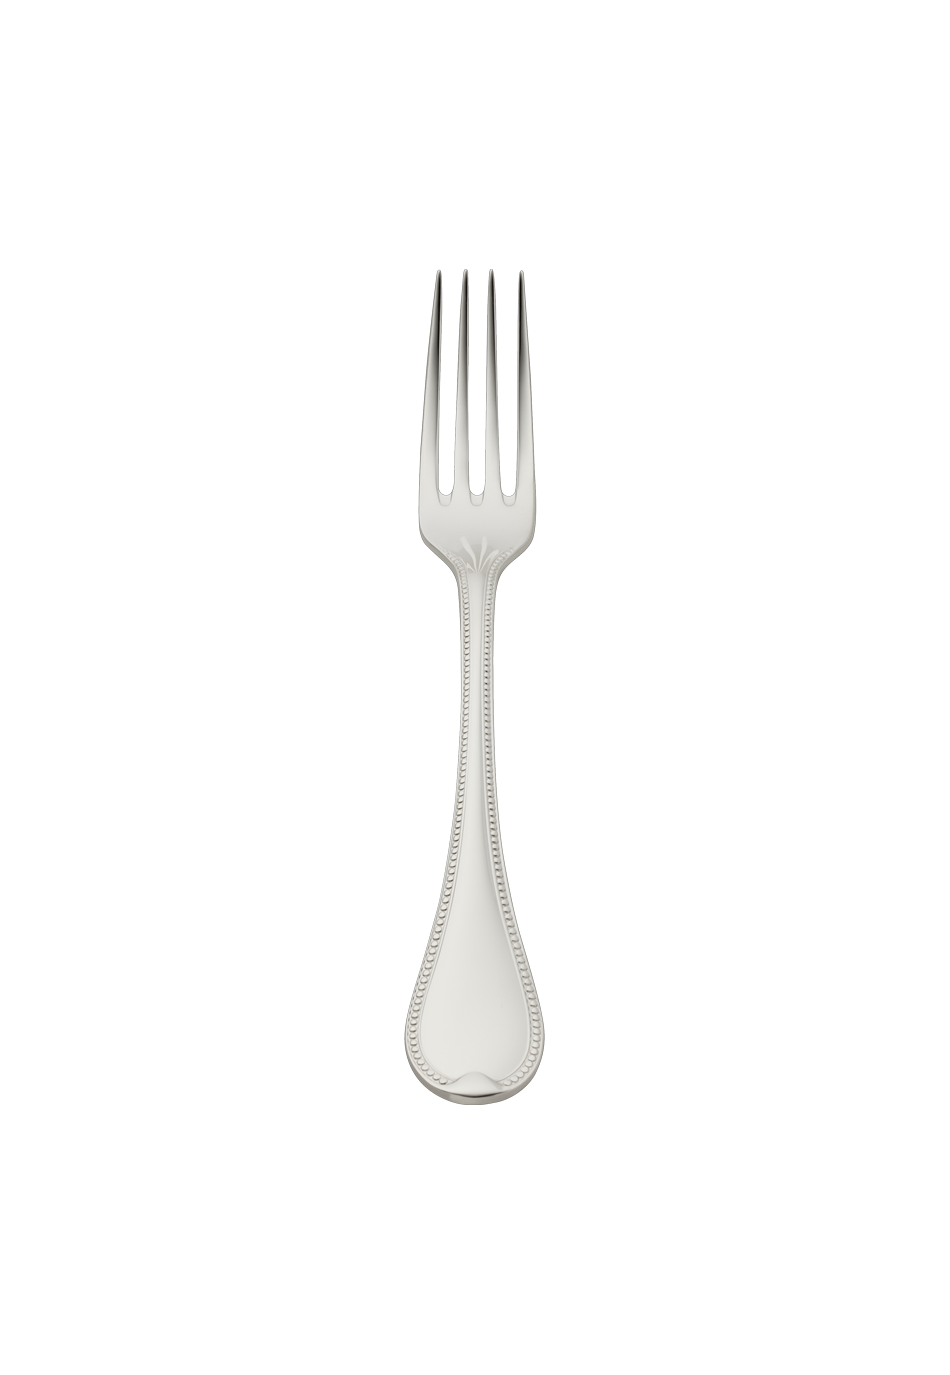 Französisch-Perl Dessert Fork (150g massive silverplated)